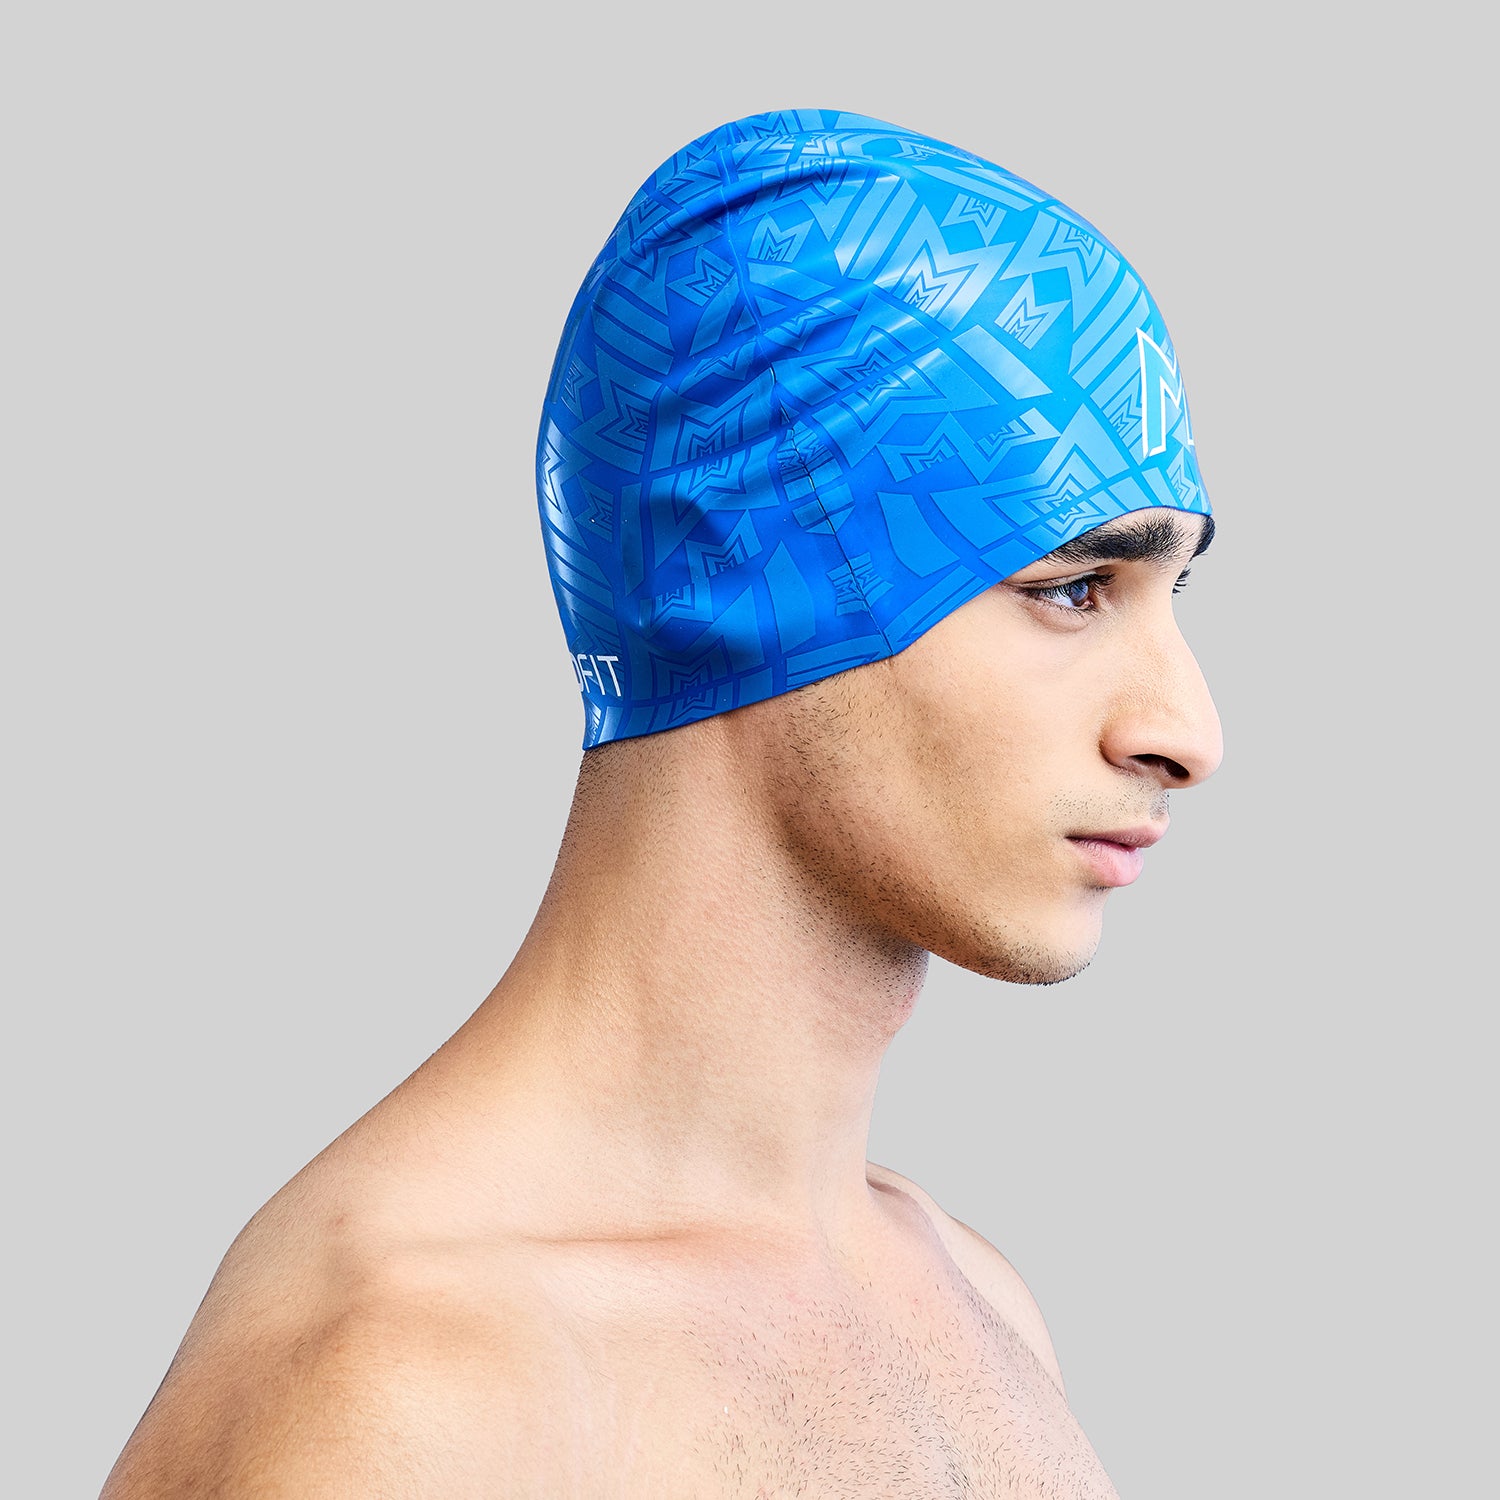 Official MI Merch - Unisex Swimming Cap